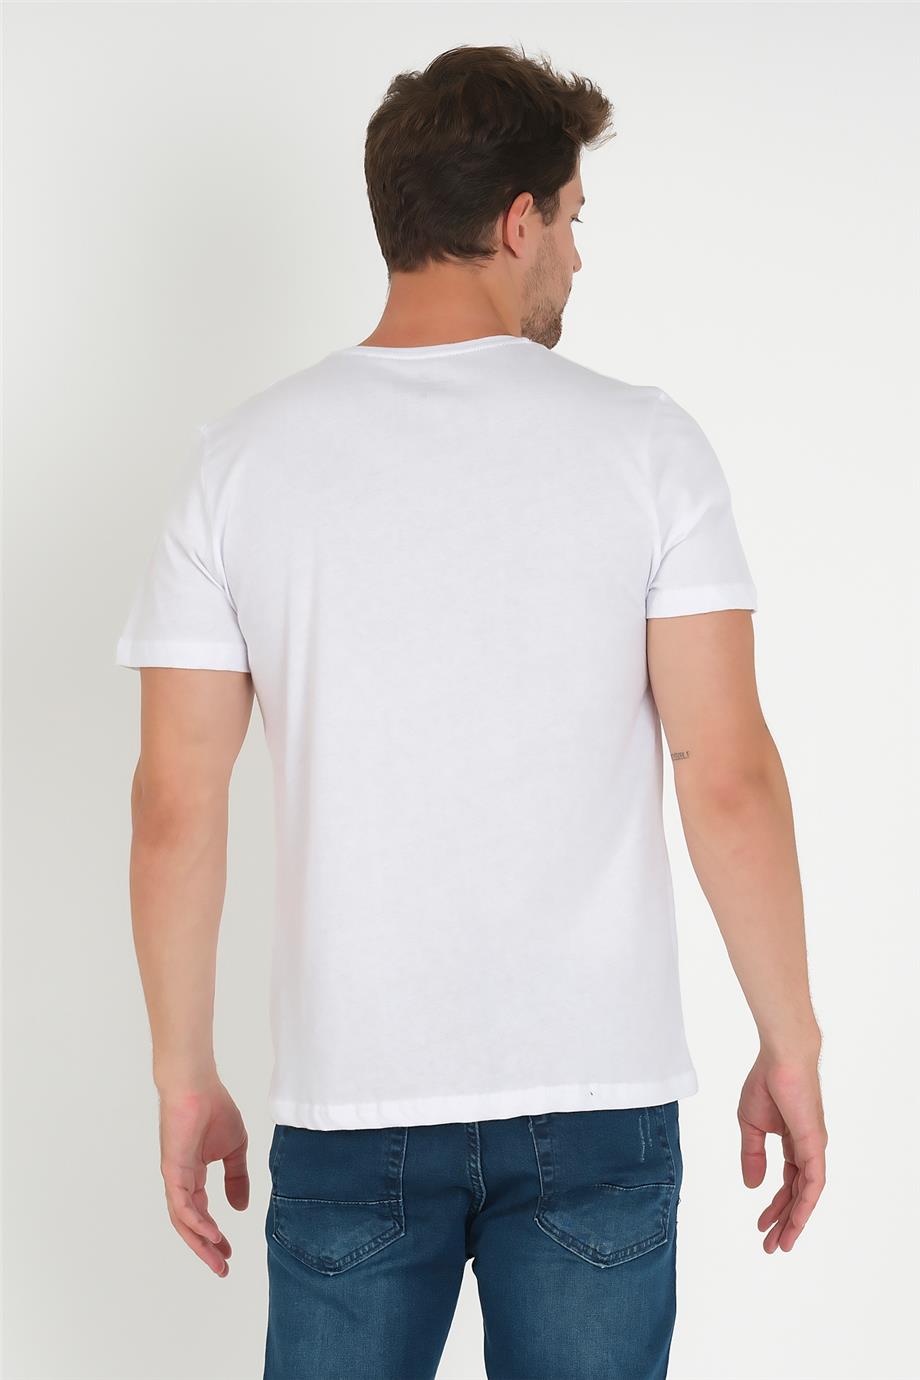 Erkek Cep Baskılı Düz Renk Tişört 3022 - Beyaz - Bisiklet yaka baskılı  tişört